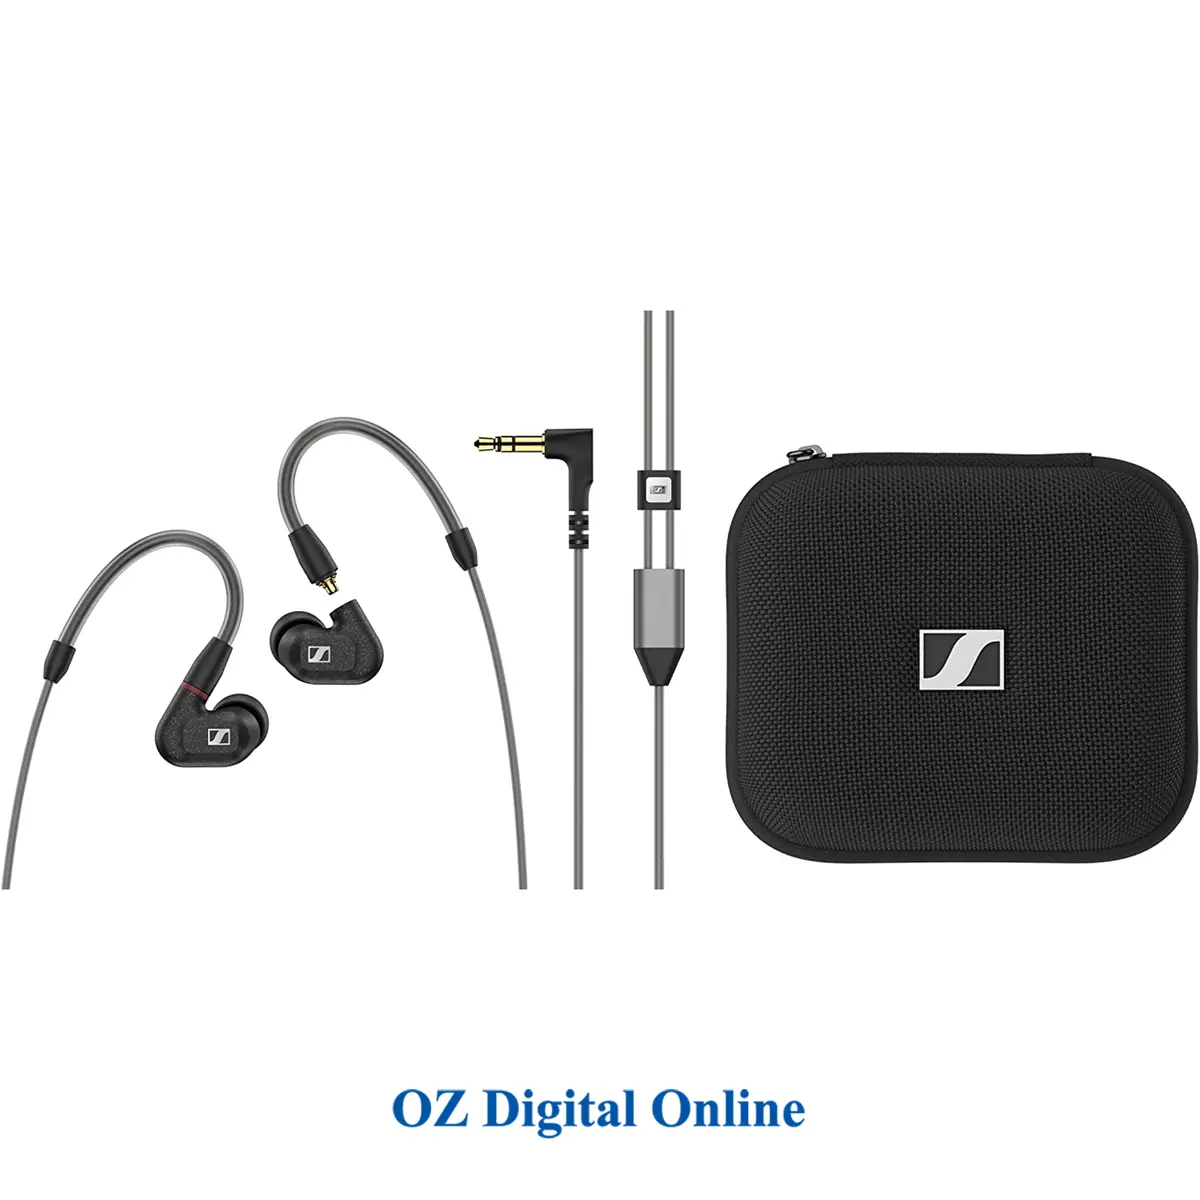 2. Sennheiser IE 300 In-Ear Headphones